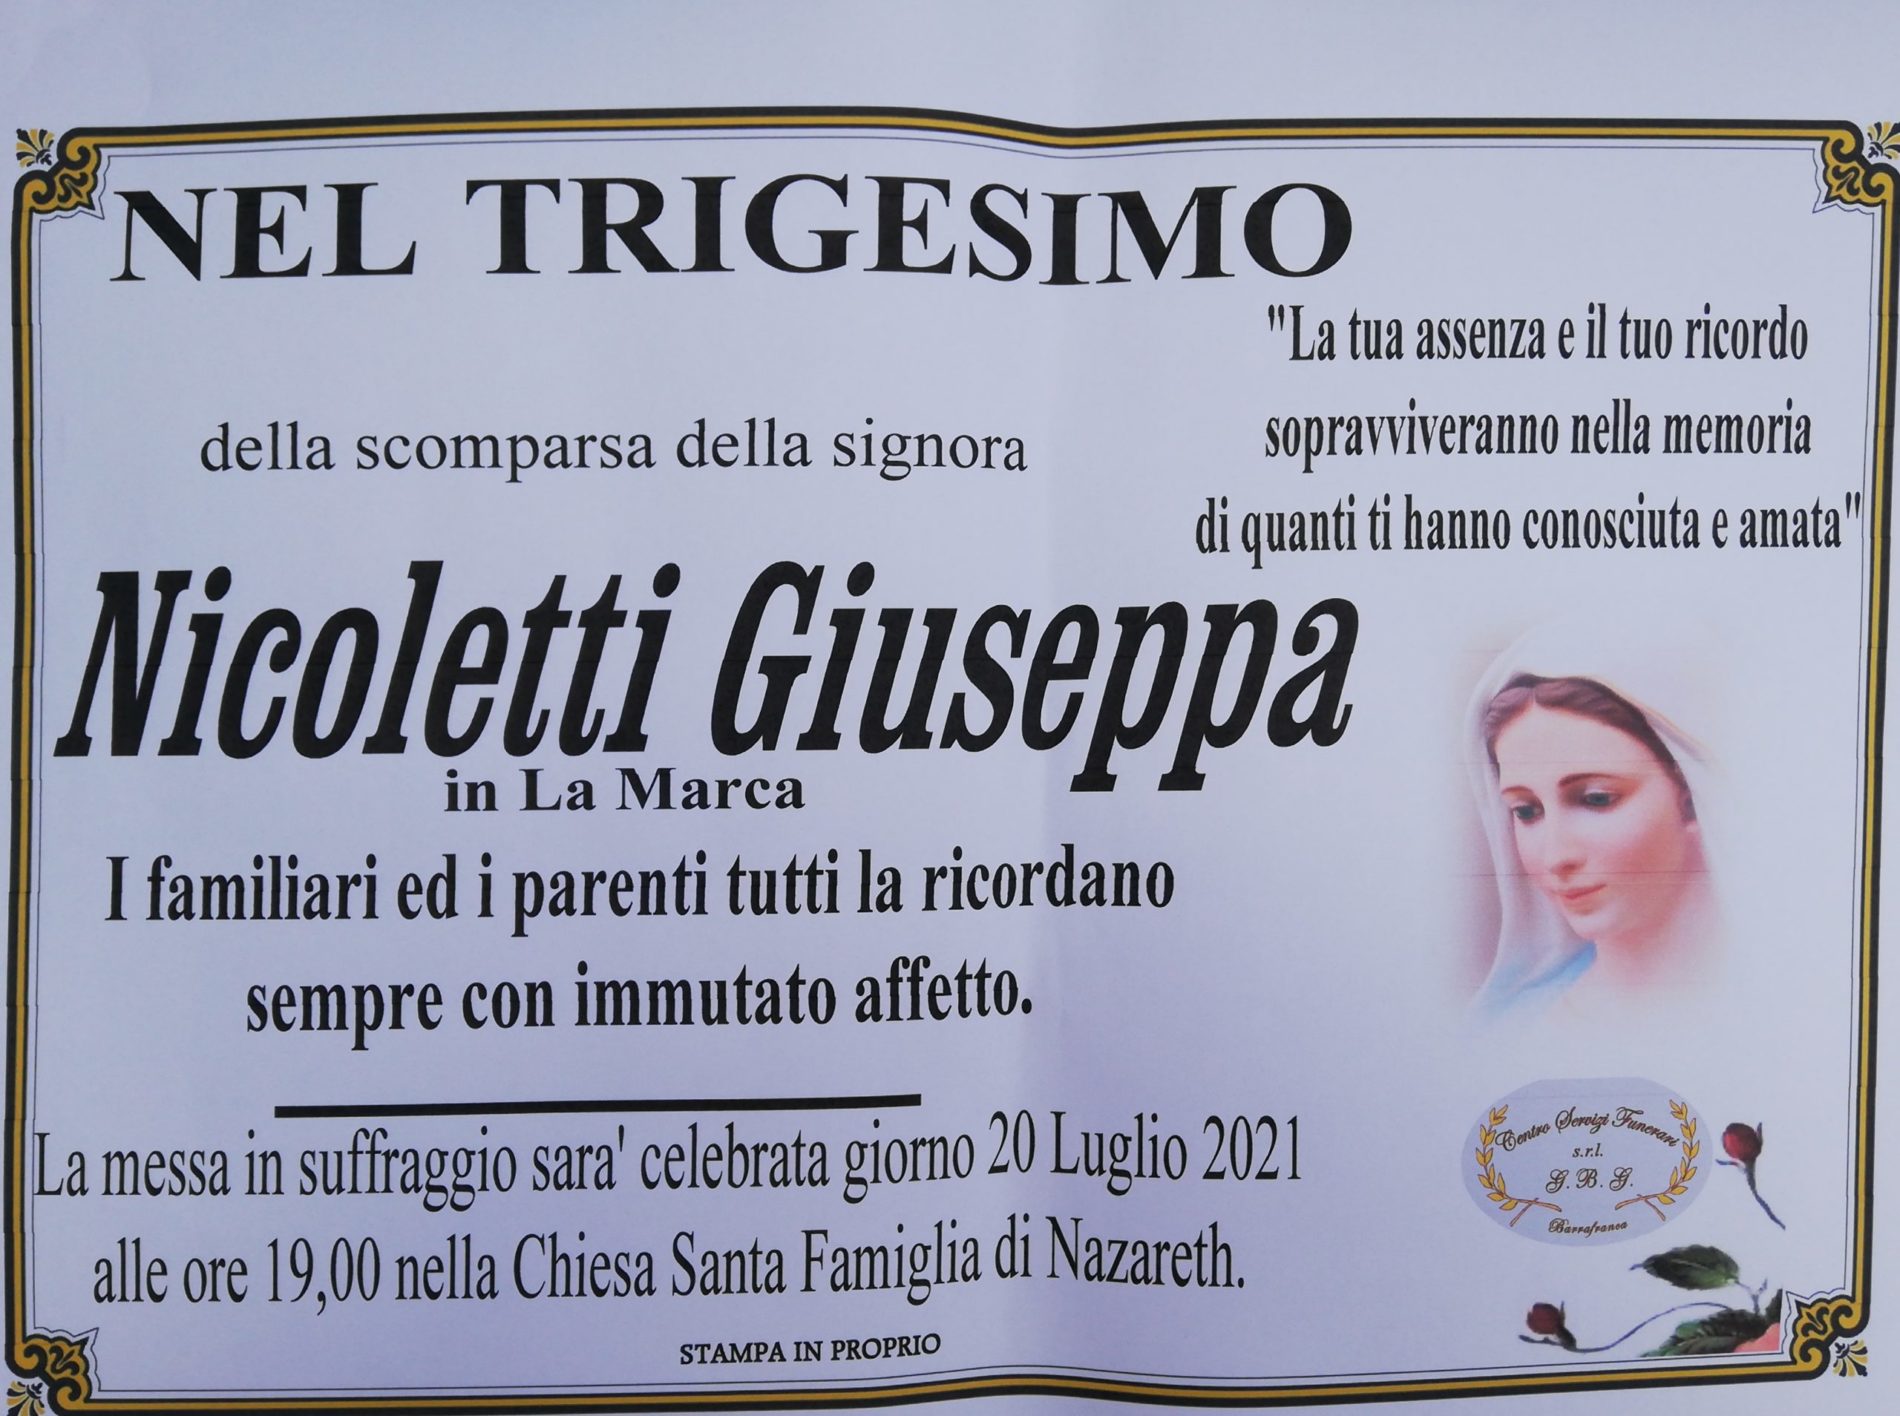 Annuncio servizi  agenzia G.B.G. Trigesimo della sig.ra Nicoletti Giuseppa in La Marca